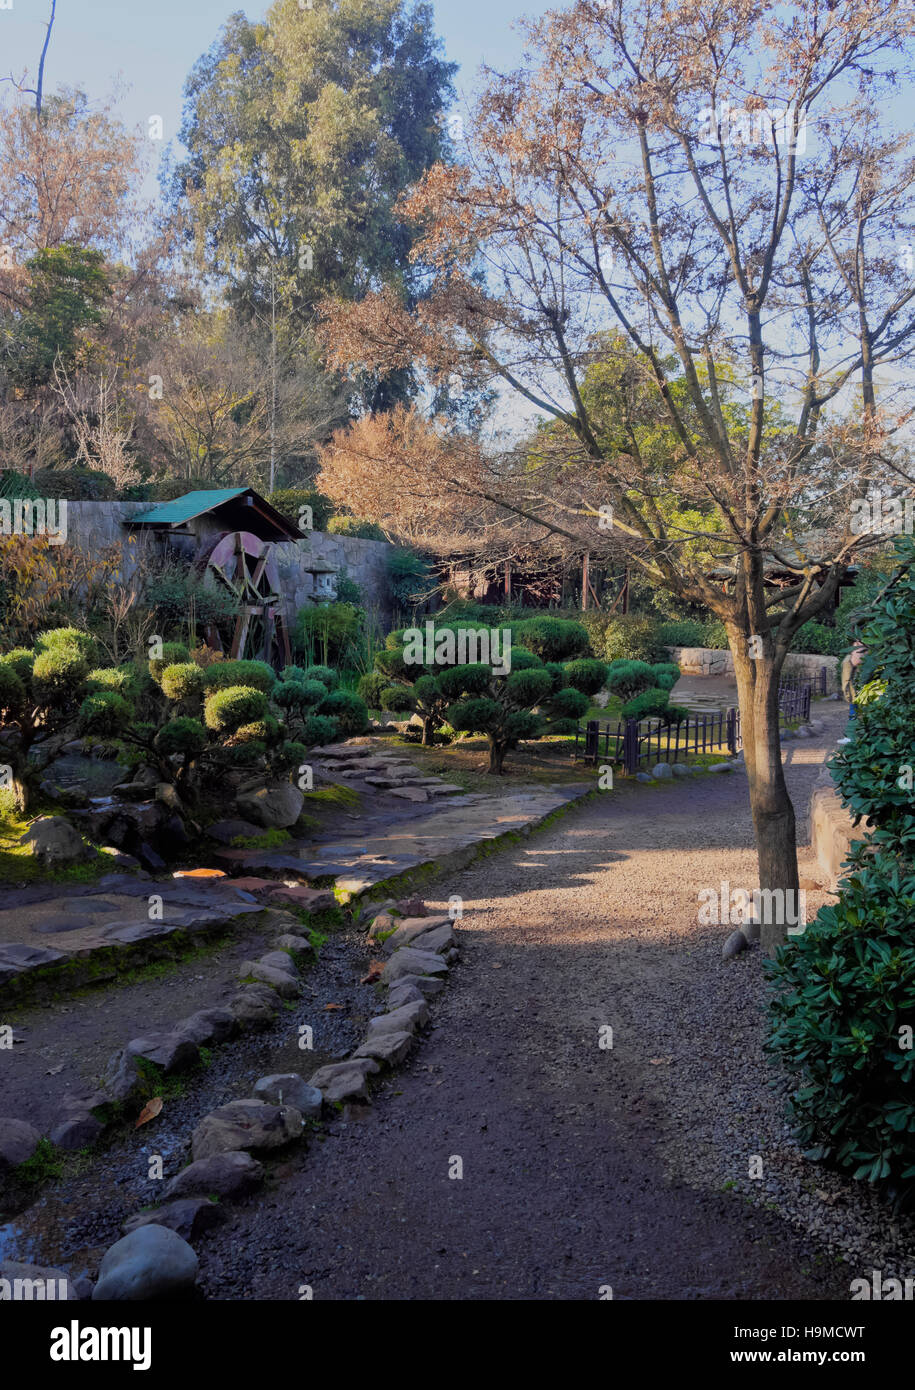 Chile, Santiago, Parque Metropolitano de Santiago, View of the Japanese Garden. Stock Photo